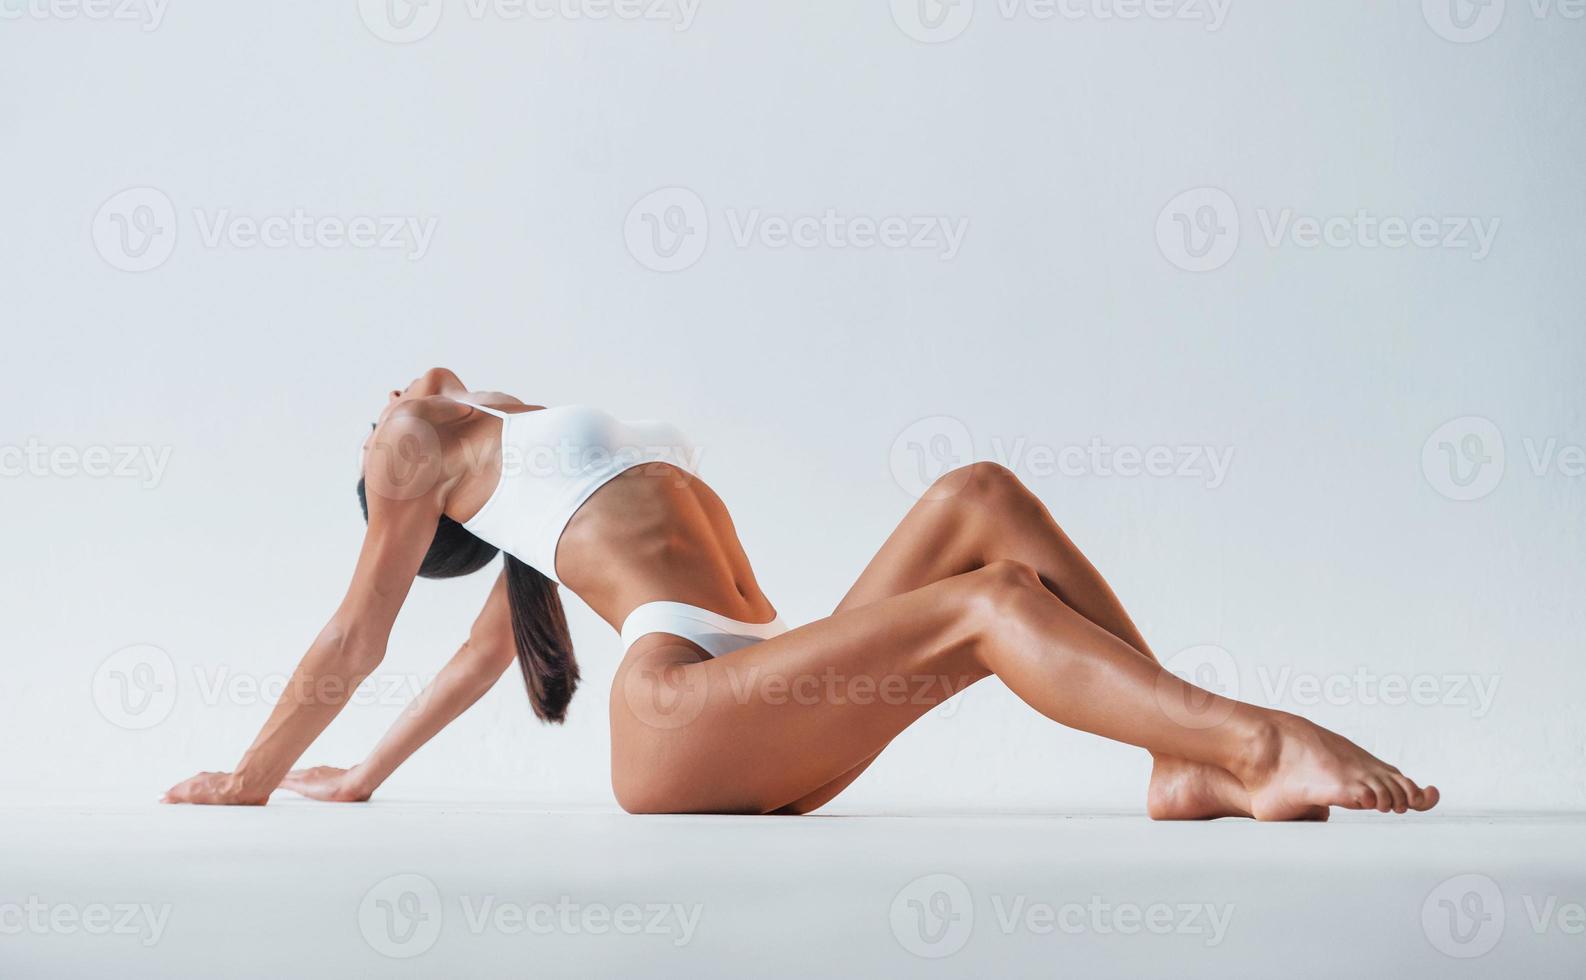 sentado no chão. mulher bonita com corpo magro em cueca está no estúdio foto